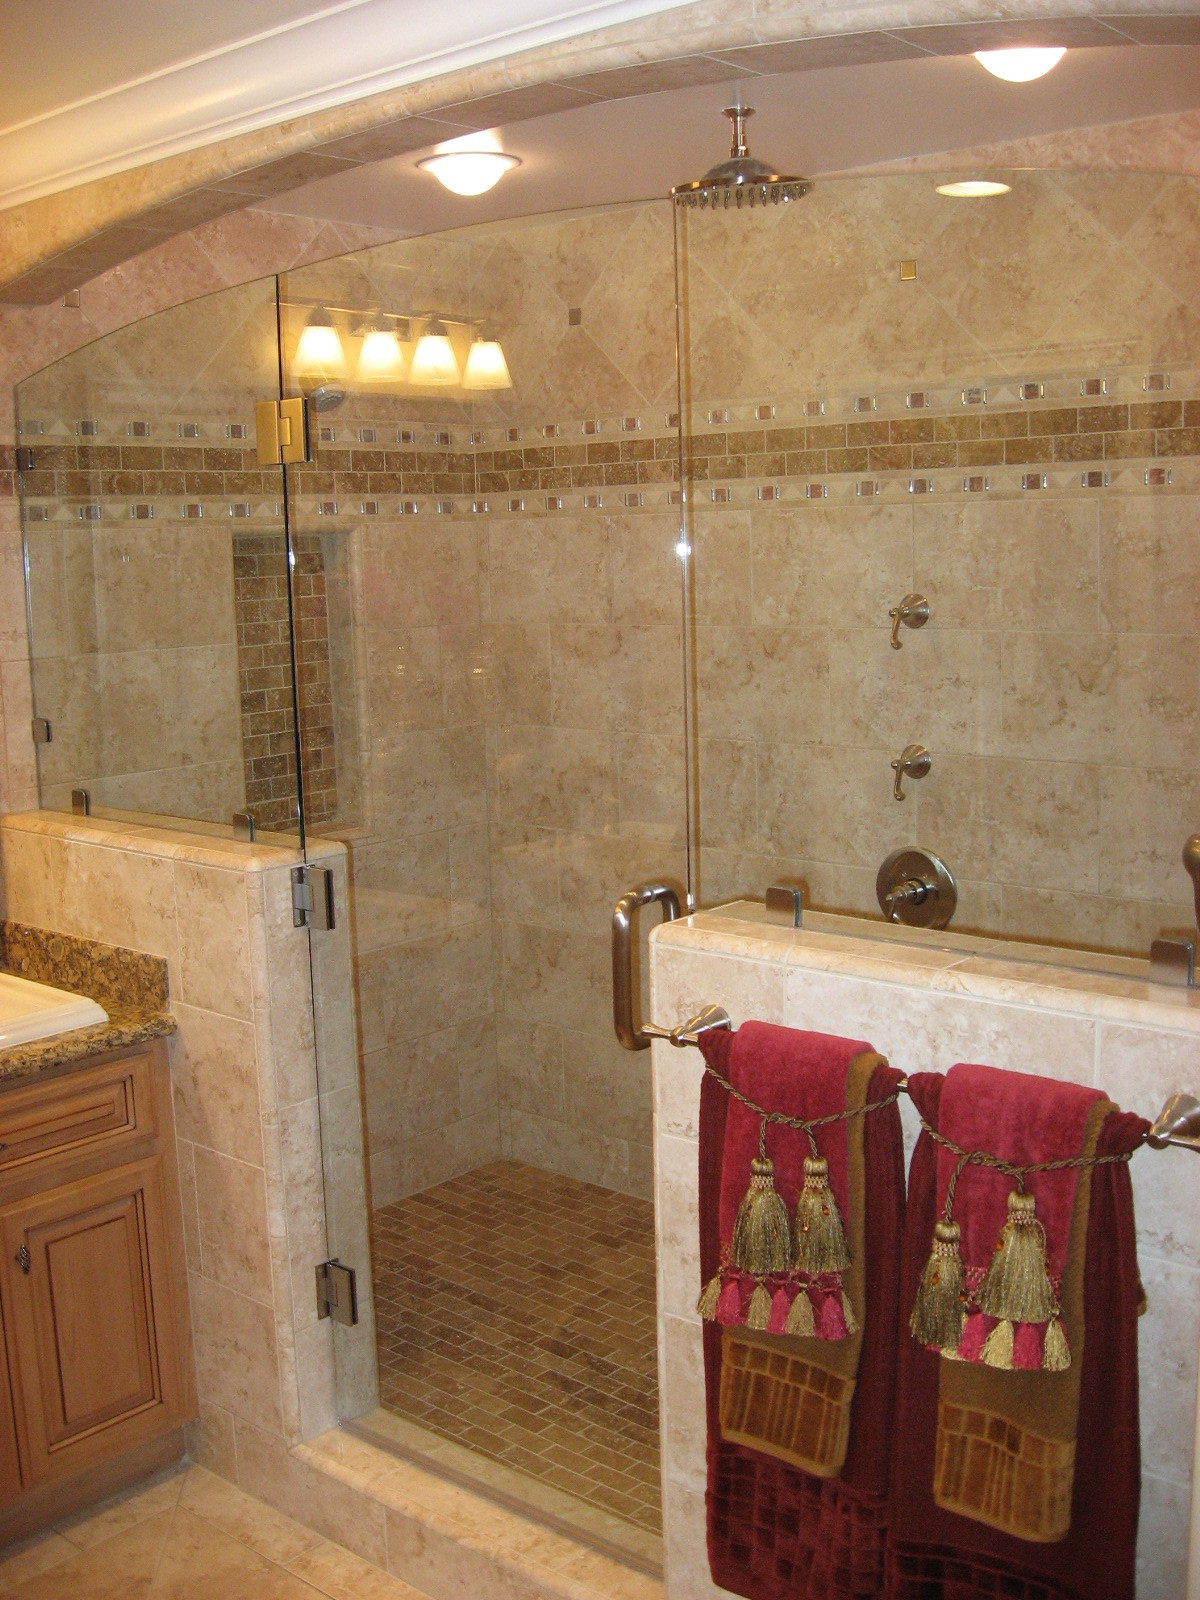 Bathroom Tile Patterns Shower
 26 Tiled Shower Designs Trends 2018 Interior Decorating